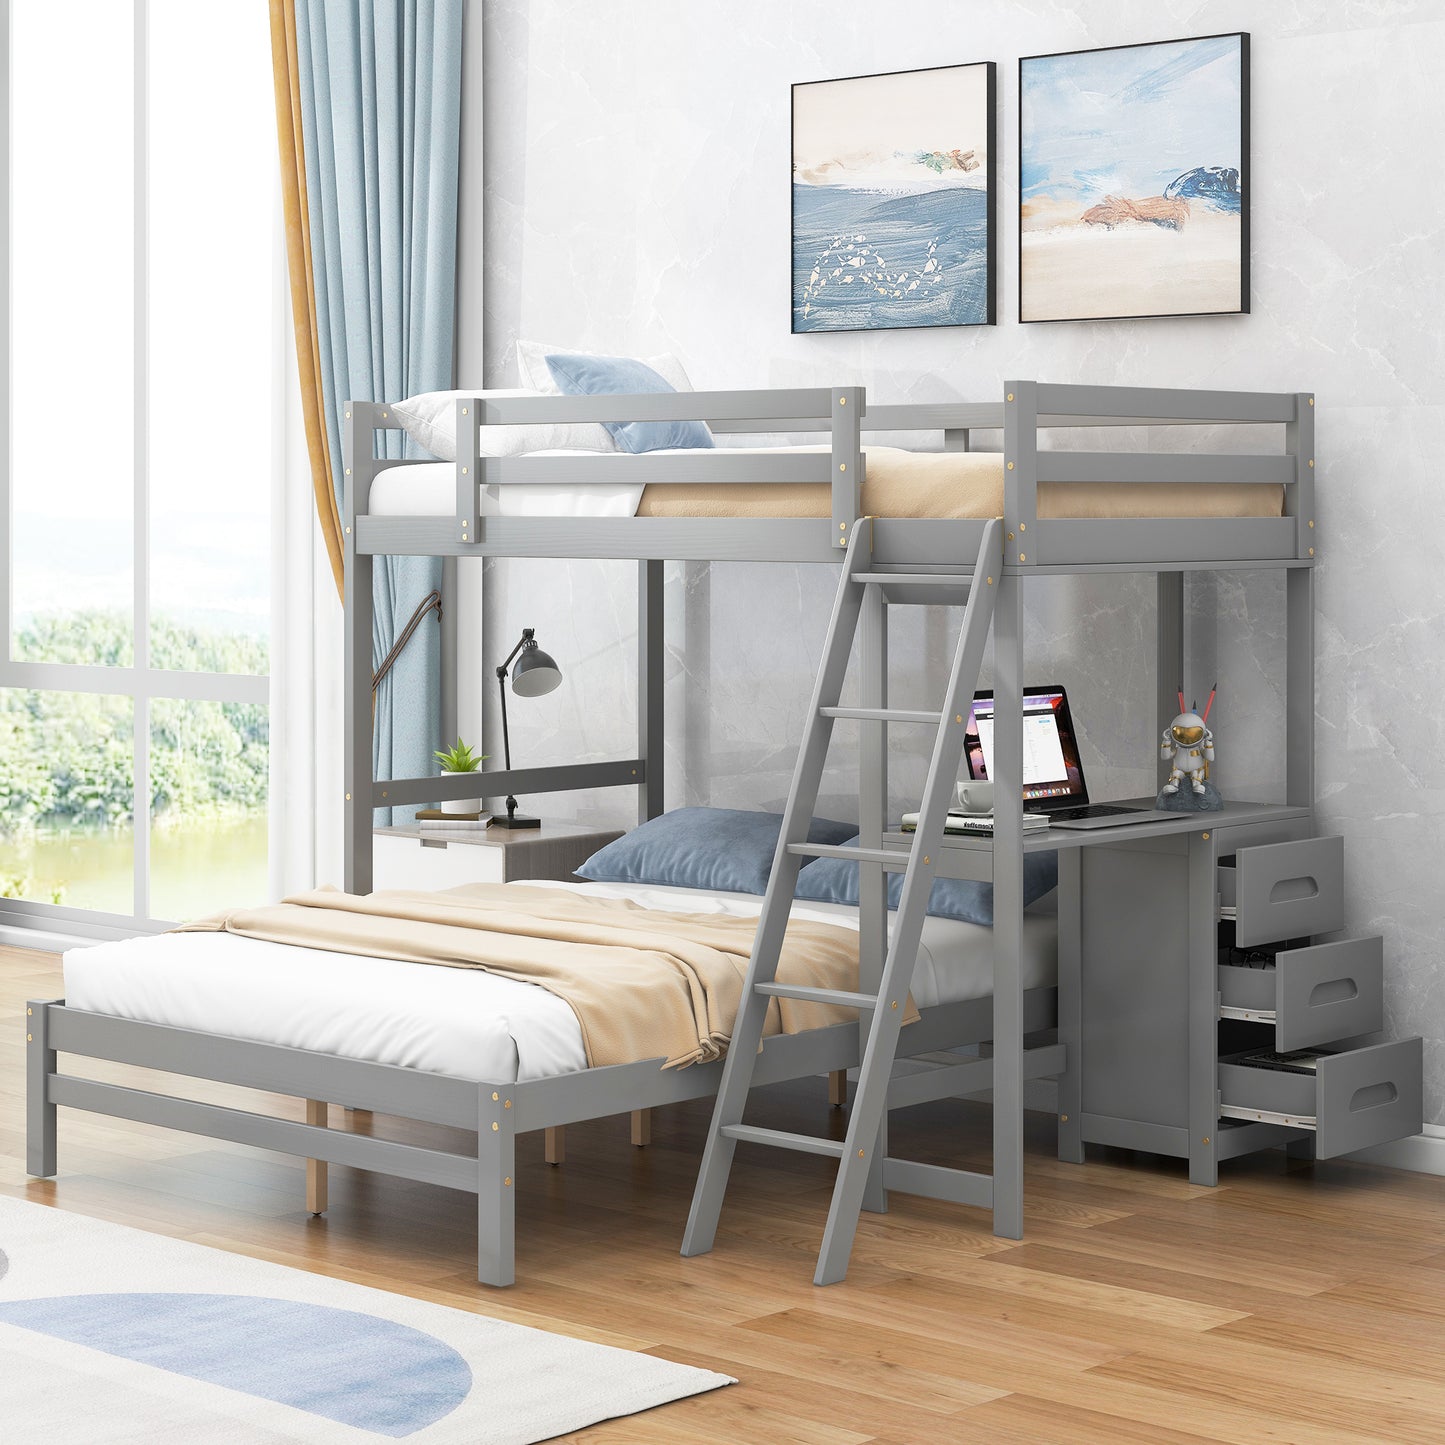 Twin-over-Etagenbett mit integriertem Schreibtisch und drei Schubladen (Grau)